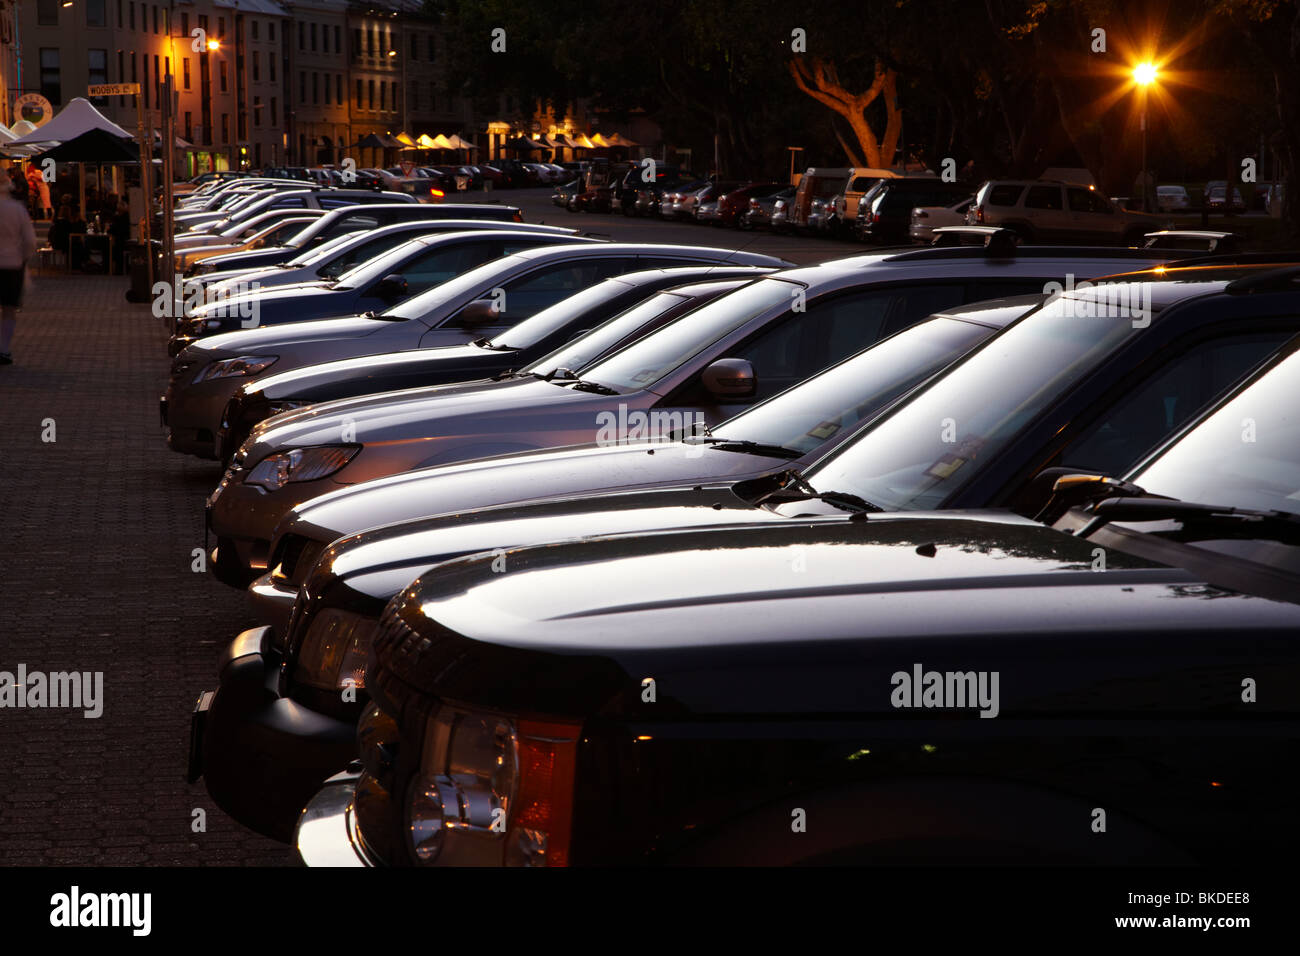 Lumière du soir sur la rangée de voitures garées, Salamanca Place, Hobart, Tasmanie, Australie Banque D'Images